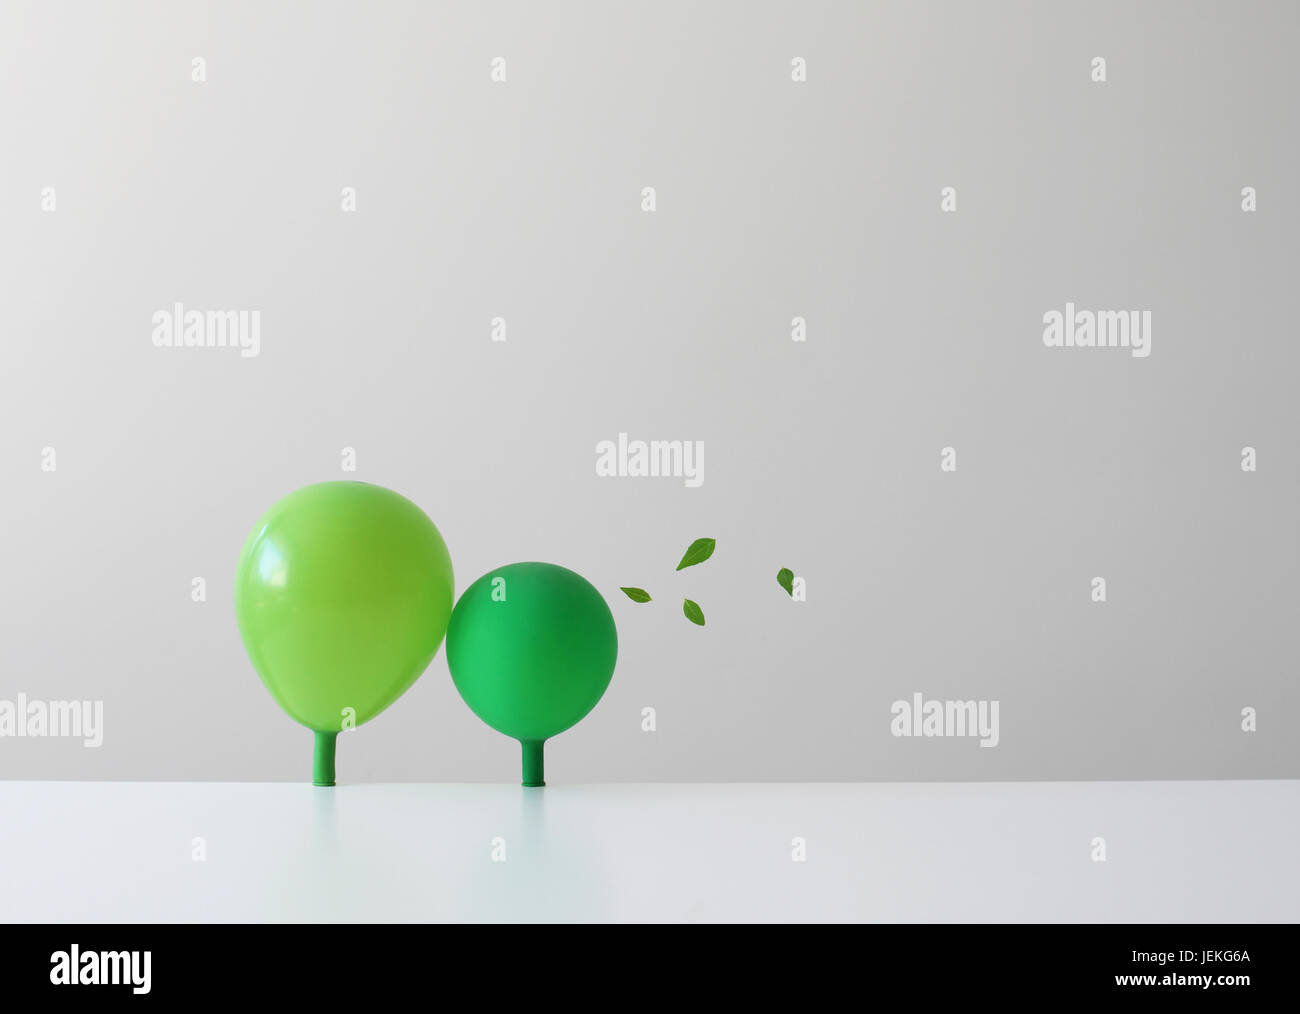 Conceptual green balloons as trees Stock Photo